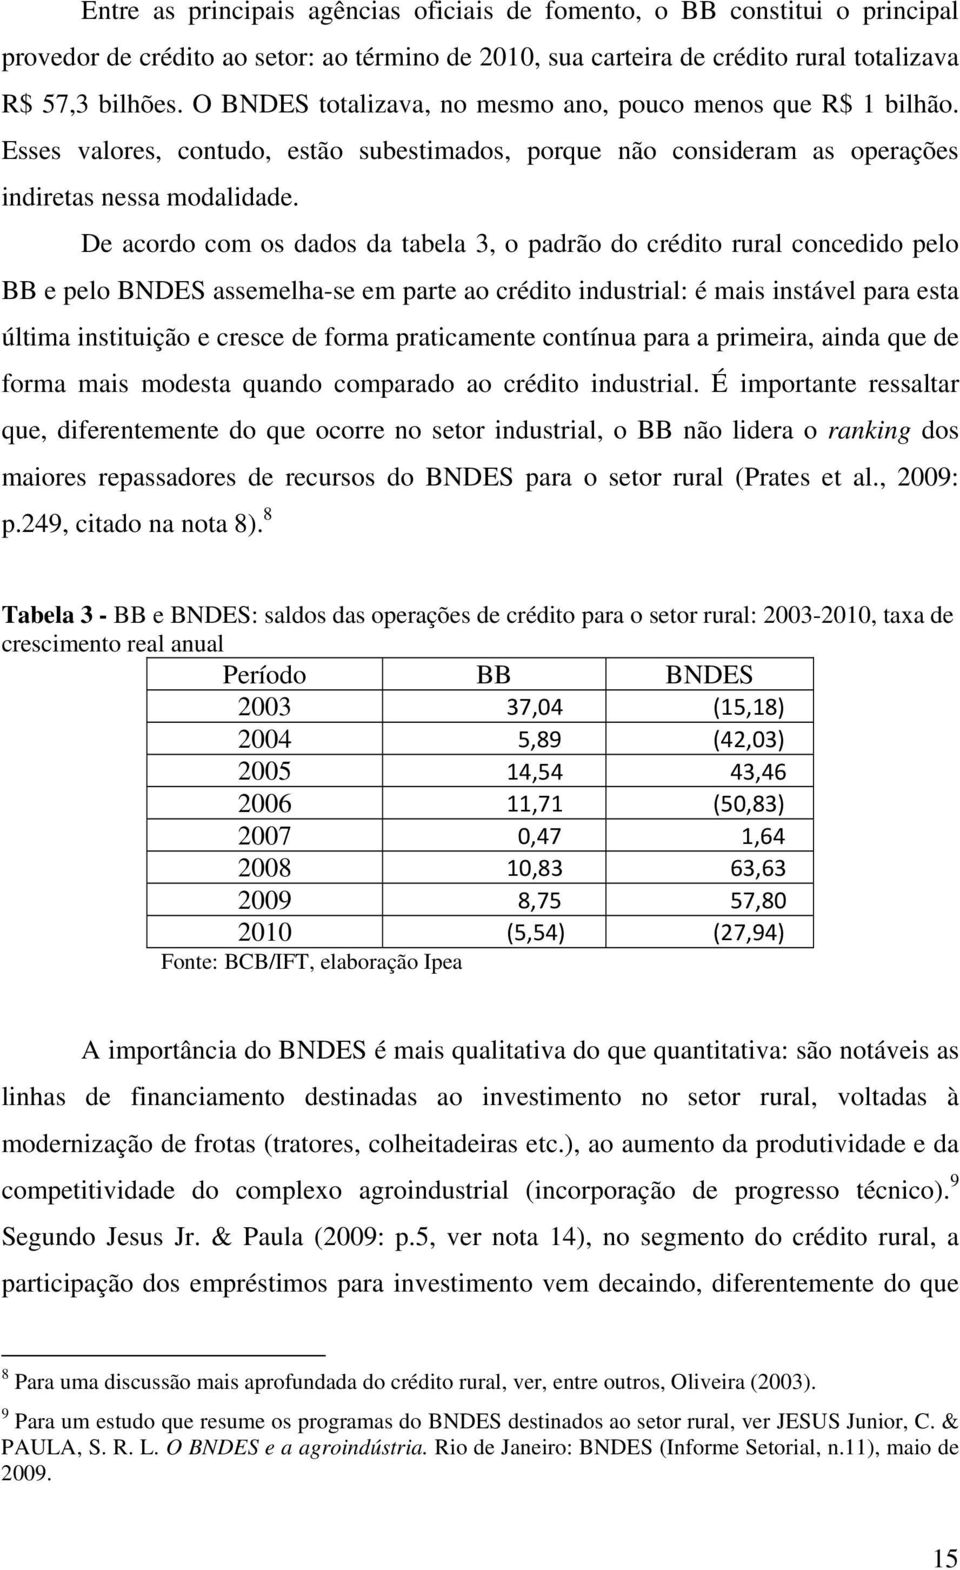 De acordo com os dados da tabela 3, o padrão do crédito rural concedido pelo BB e pelo BNDES assemelha-se em parte ao crédito industrial: é mais instável para esta última instituição e cresce de